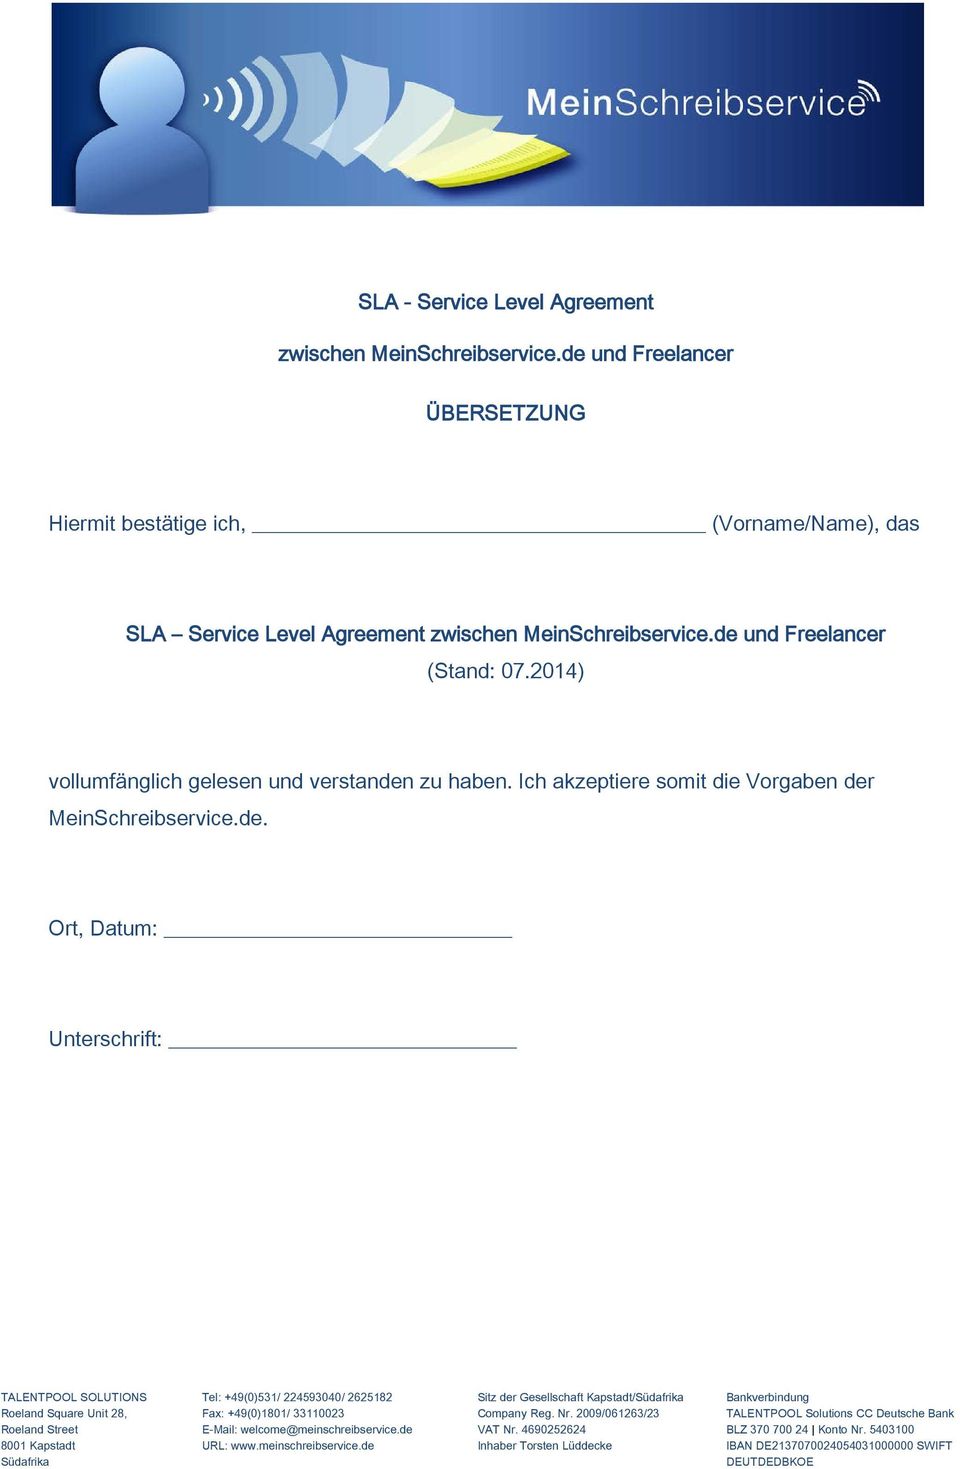 Level Agreement zwischen MeinSchreibservice.de und Freelancer (Stand: 07.